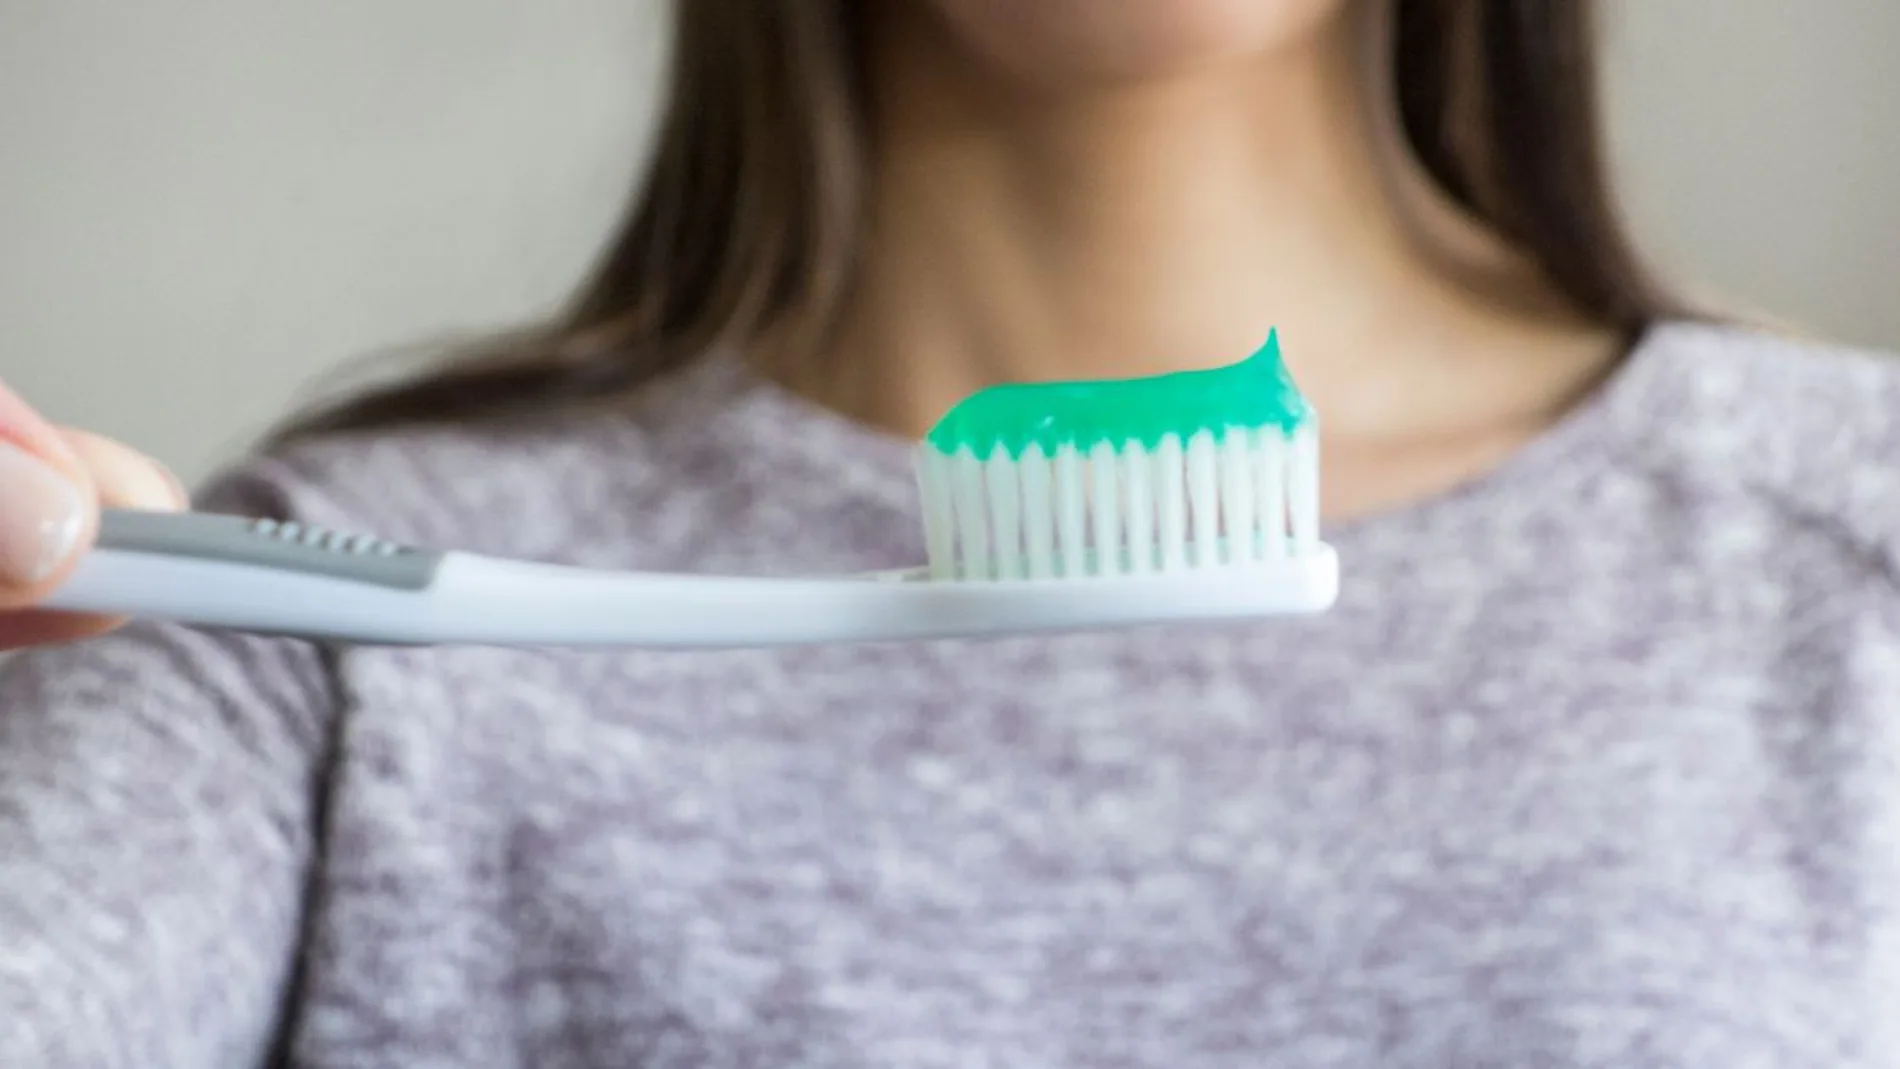 Una investigación recomienda esperar al menos 20 minutos antes de cepillarse los dientes después de comer